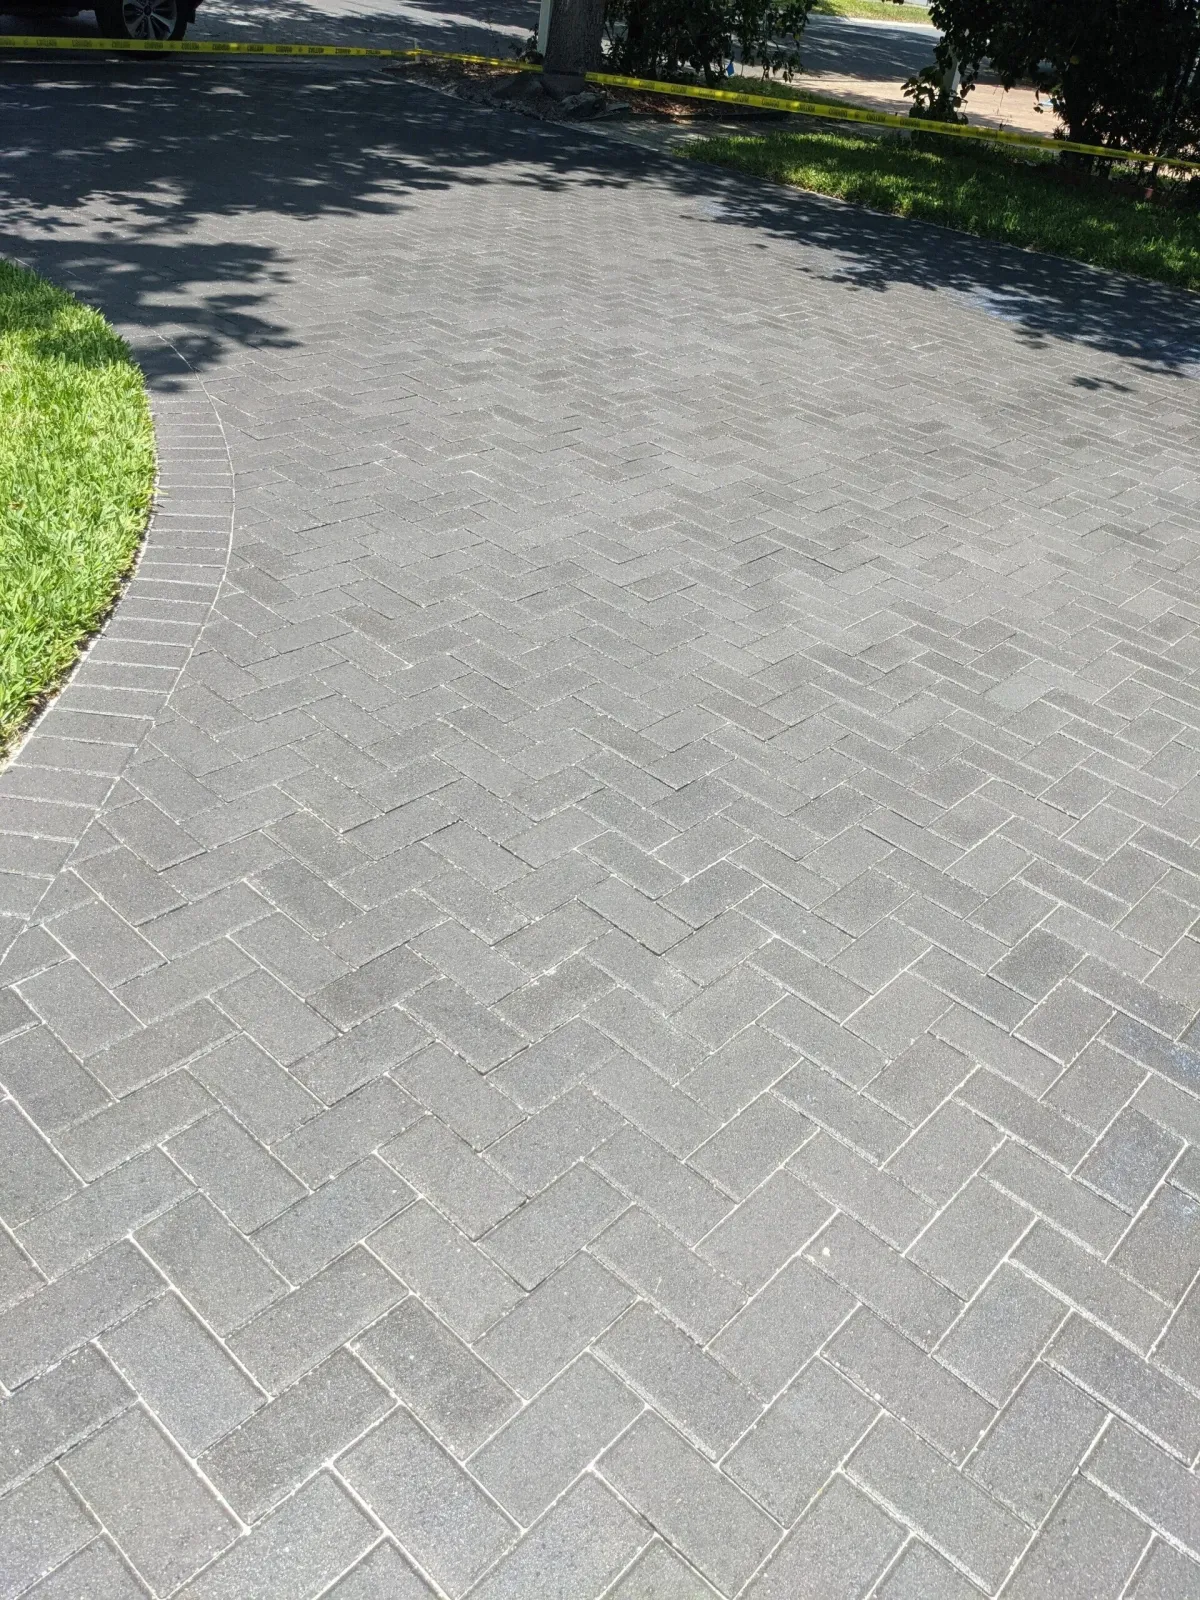 Grey driveway paver sealing